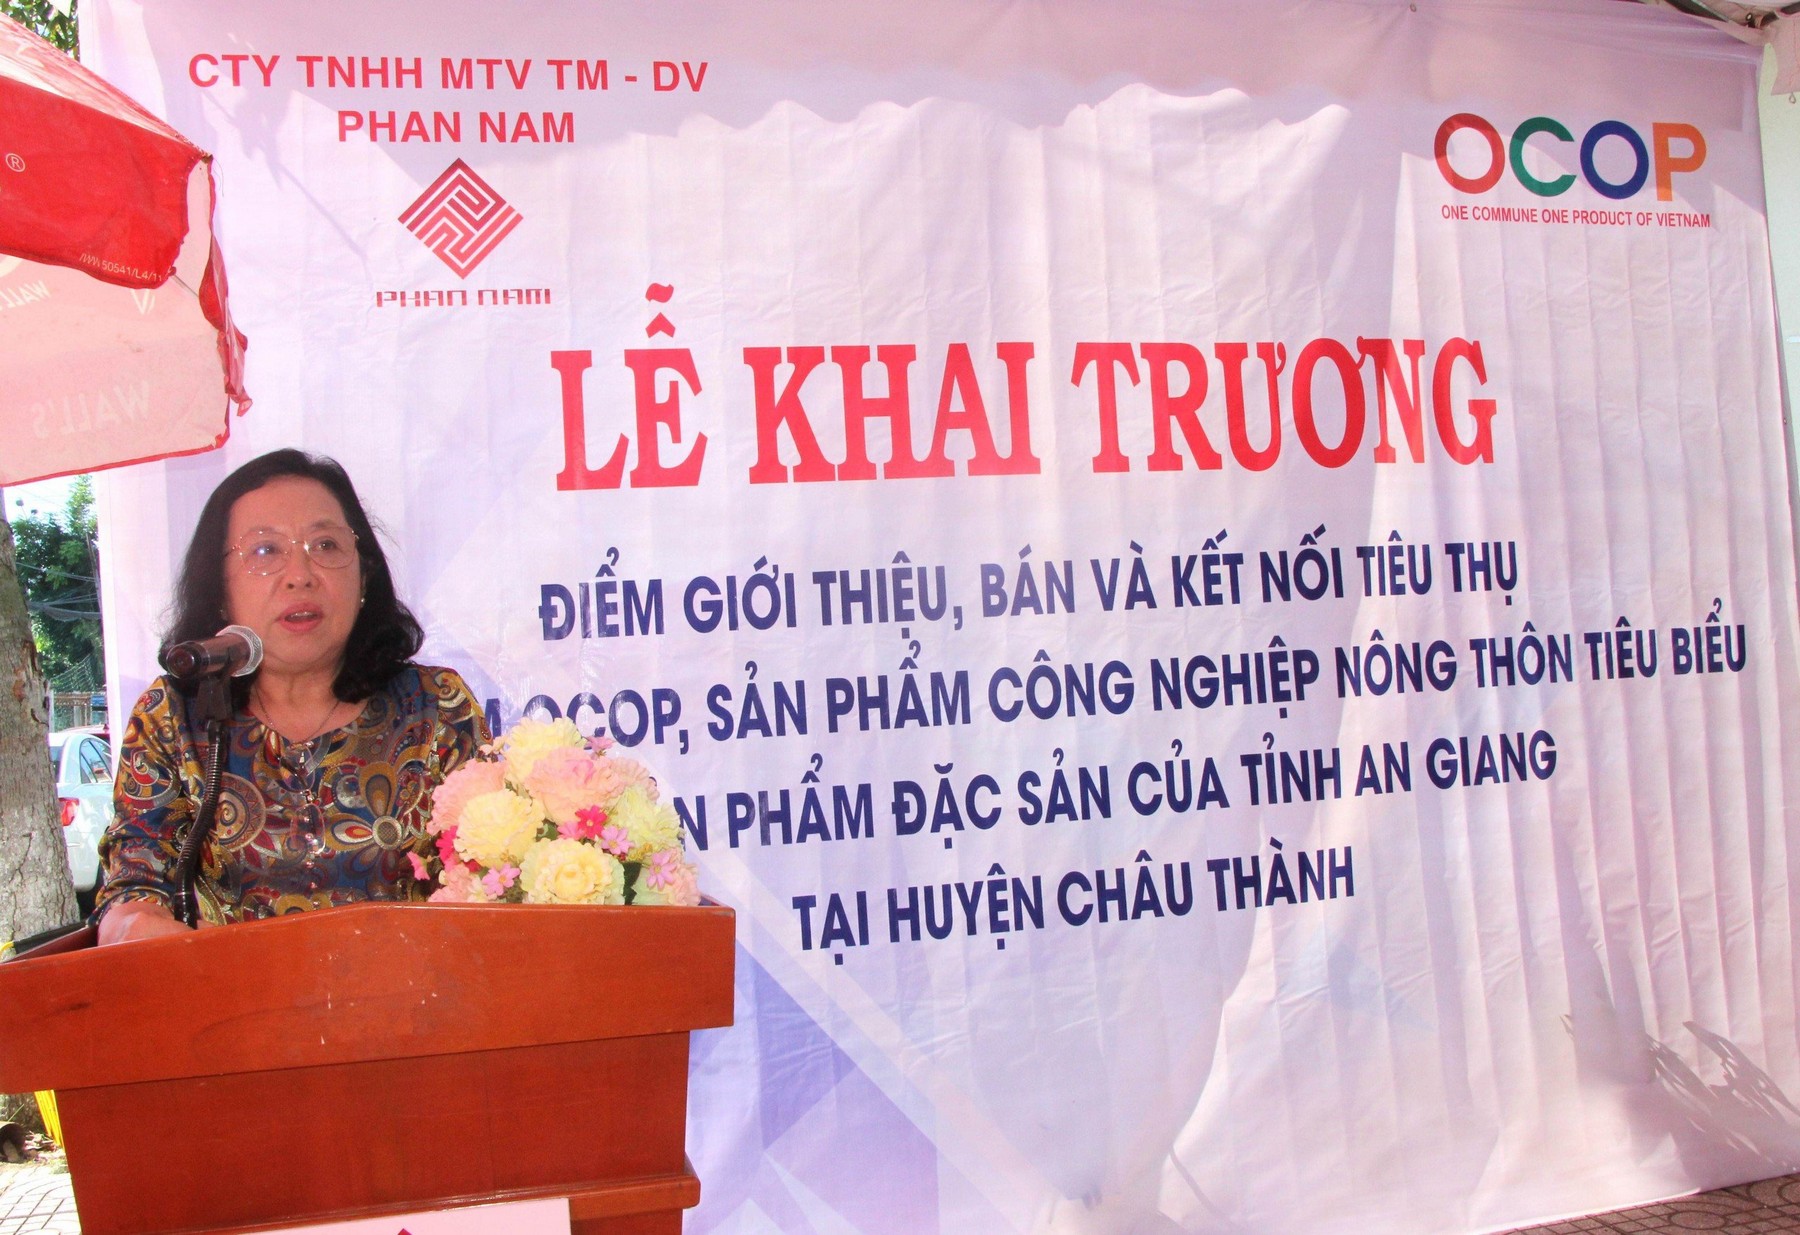 Giám đốc Công ty TNHH MTV TM -DV Phan Nam Nguyễn Thị Ngọc Trinh chia sẻ mục đích, ý nghĩa Điểm bán sản phẩm